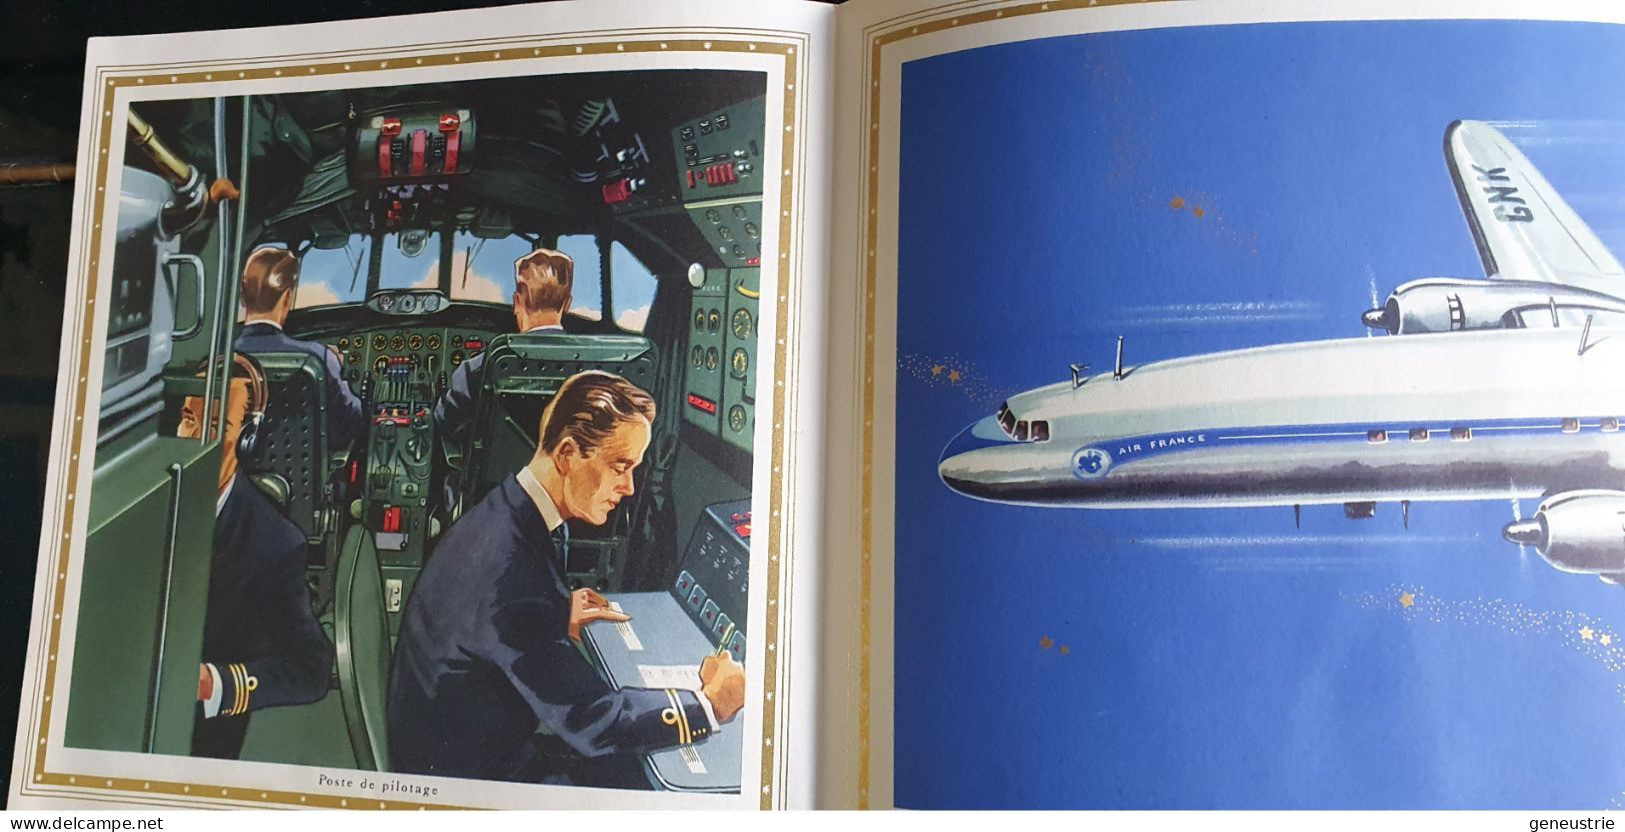 Très Belle Publicité Années 50 "Air France - Avion Super Constellation - Lockeed" - Advertenties